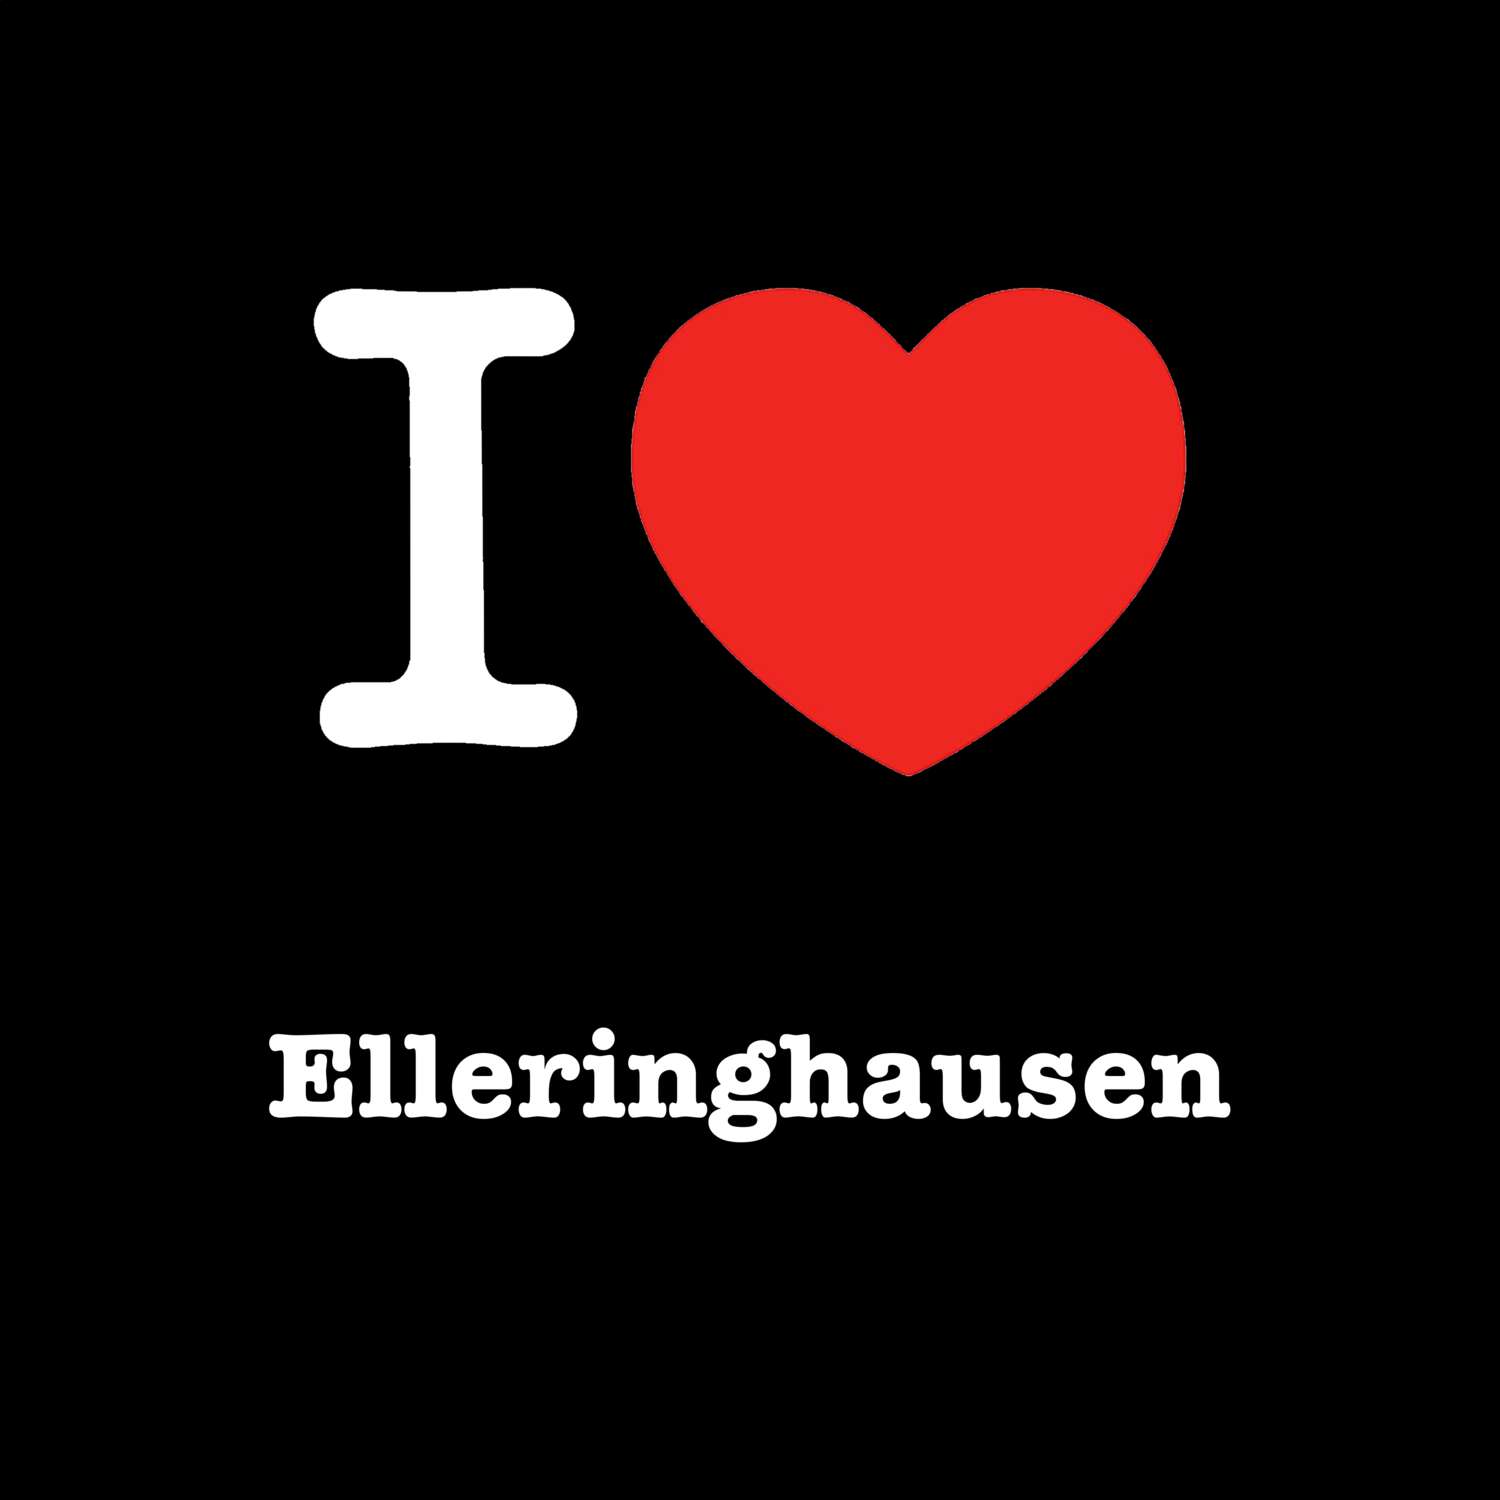 Elleringhausen T-Shirt »I love«